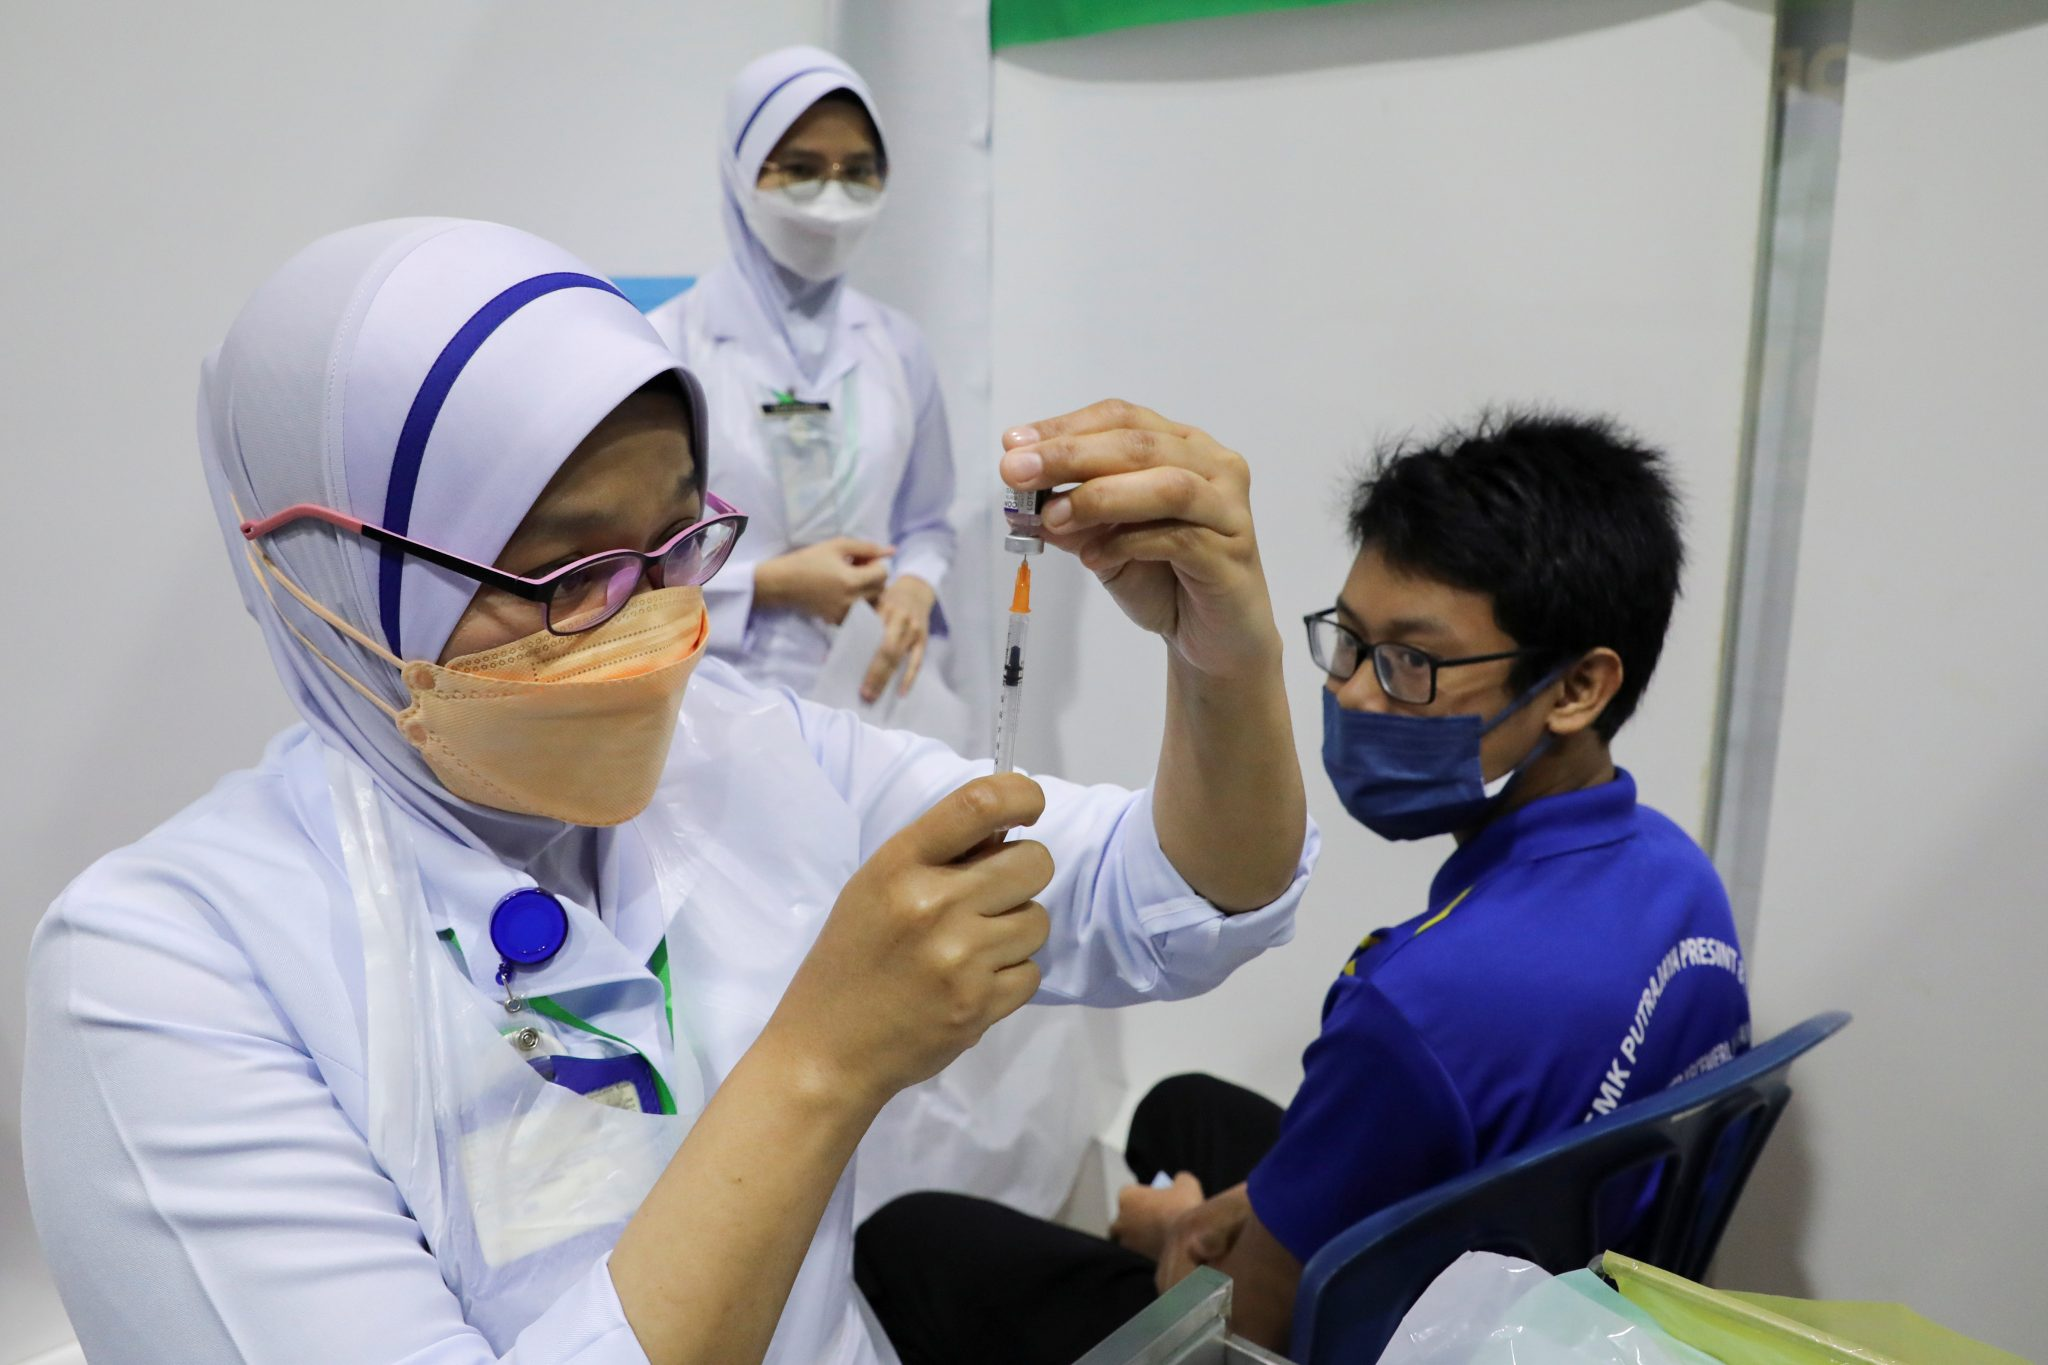 Nurse giving the covid-19 vaccine